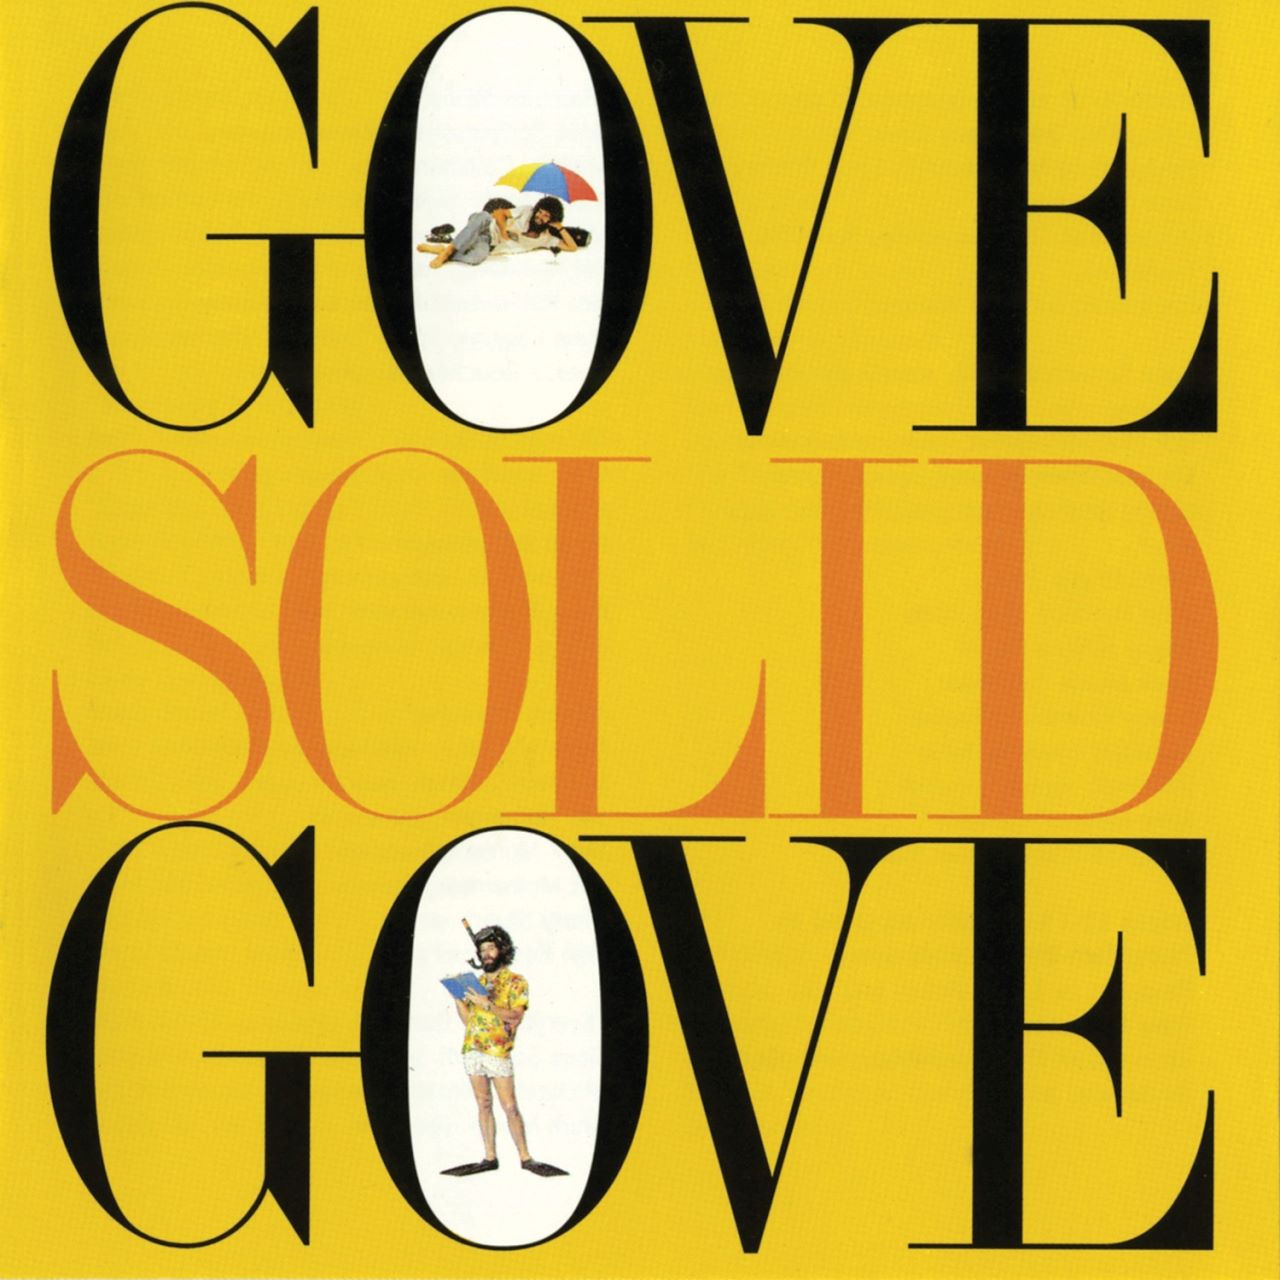 Gove Scrivenor - Gove Solid Gove cover album